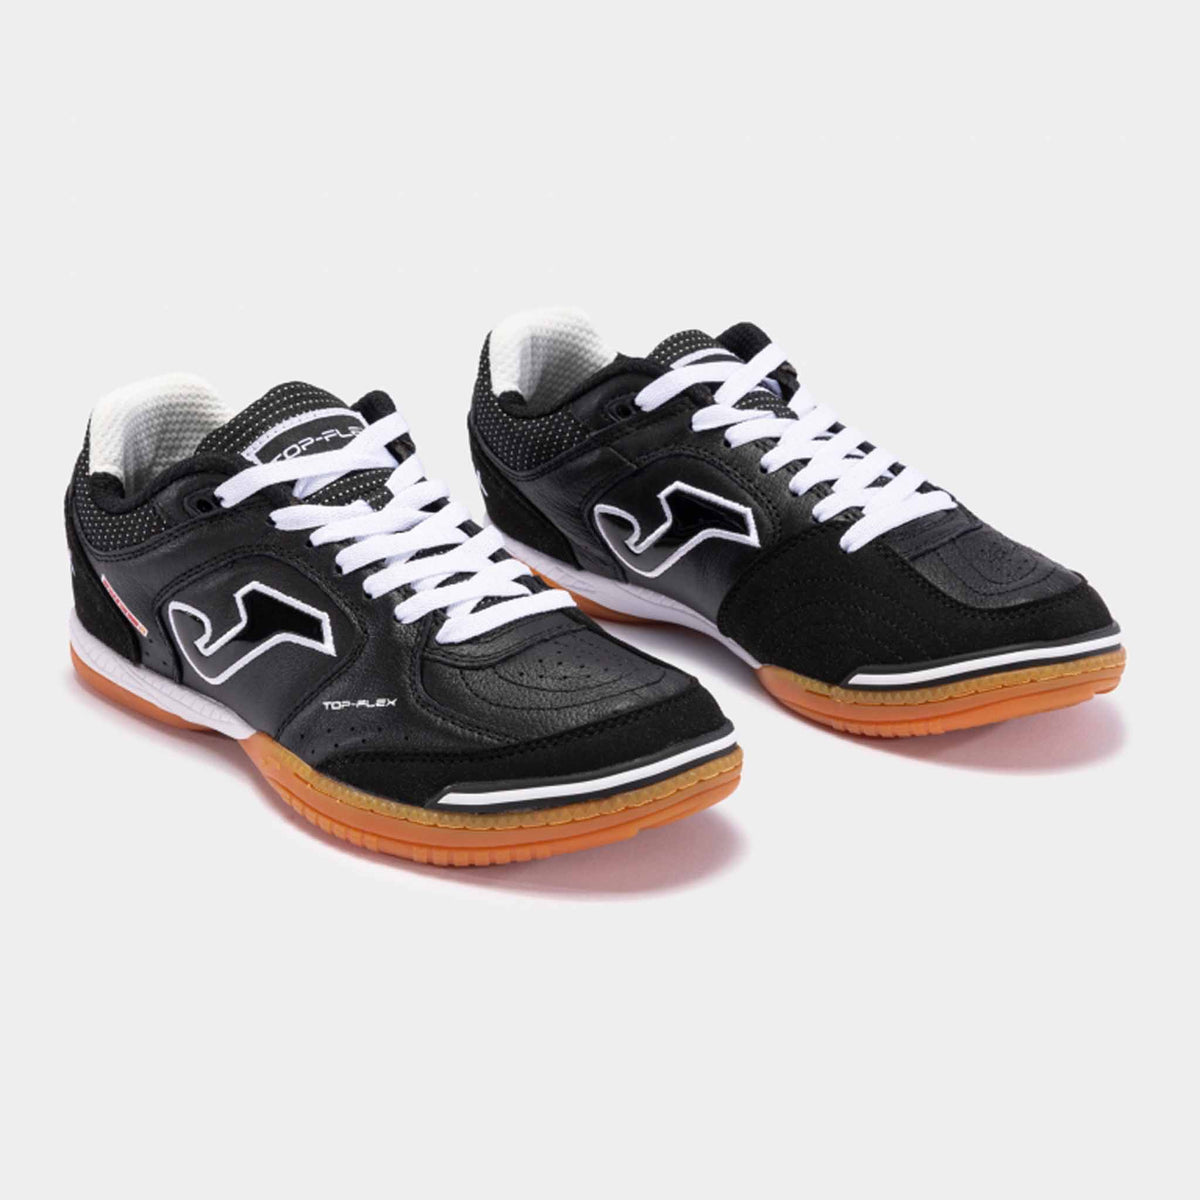 Chaussures de soccer interieur Joma Top Flex 301 Sala Futsal - Noir